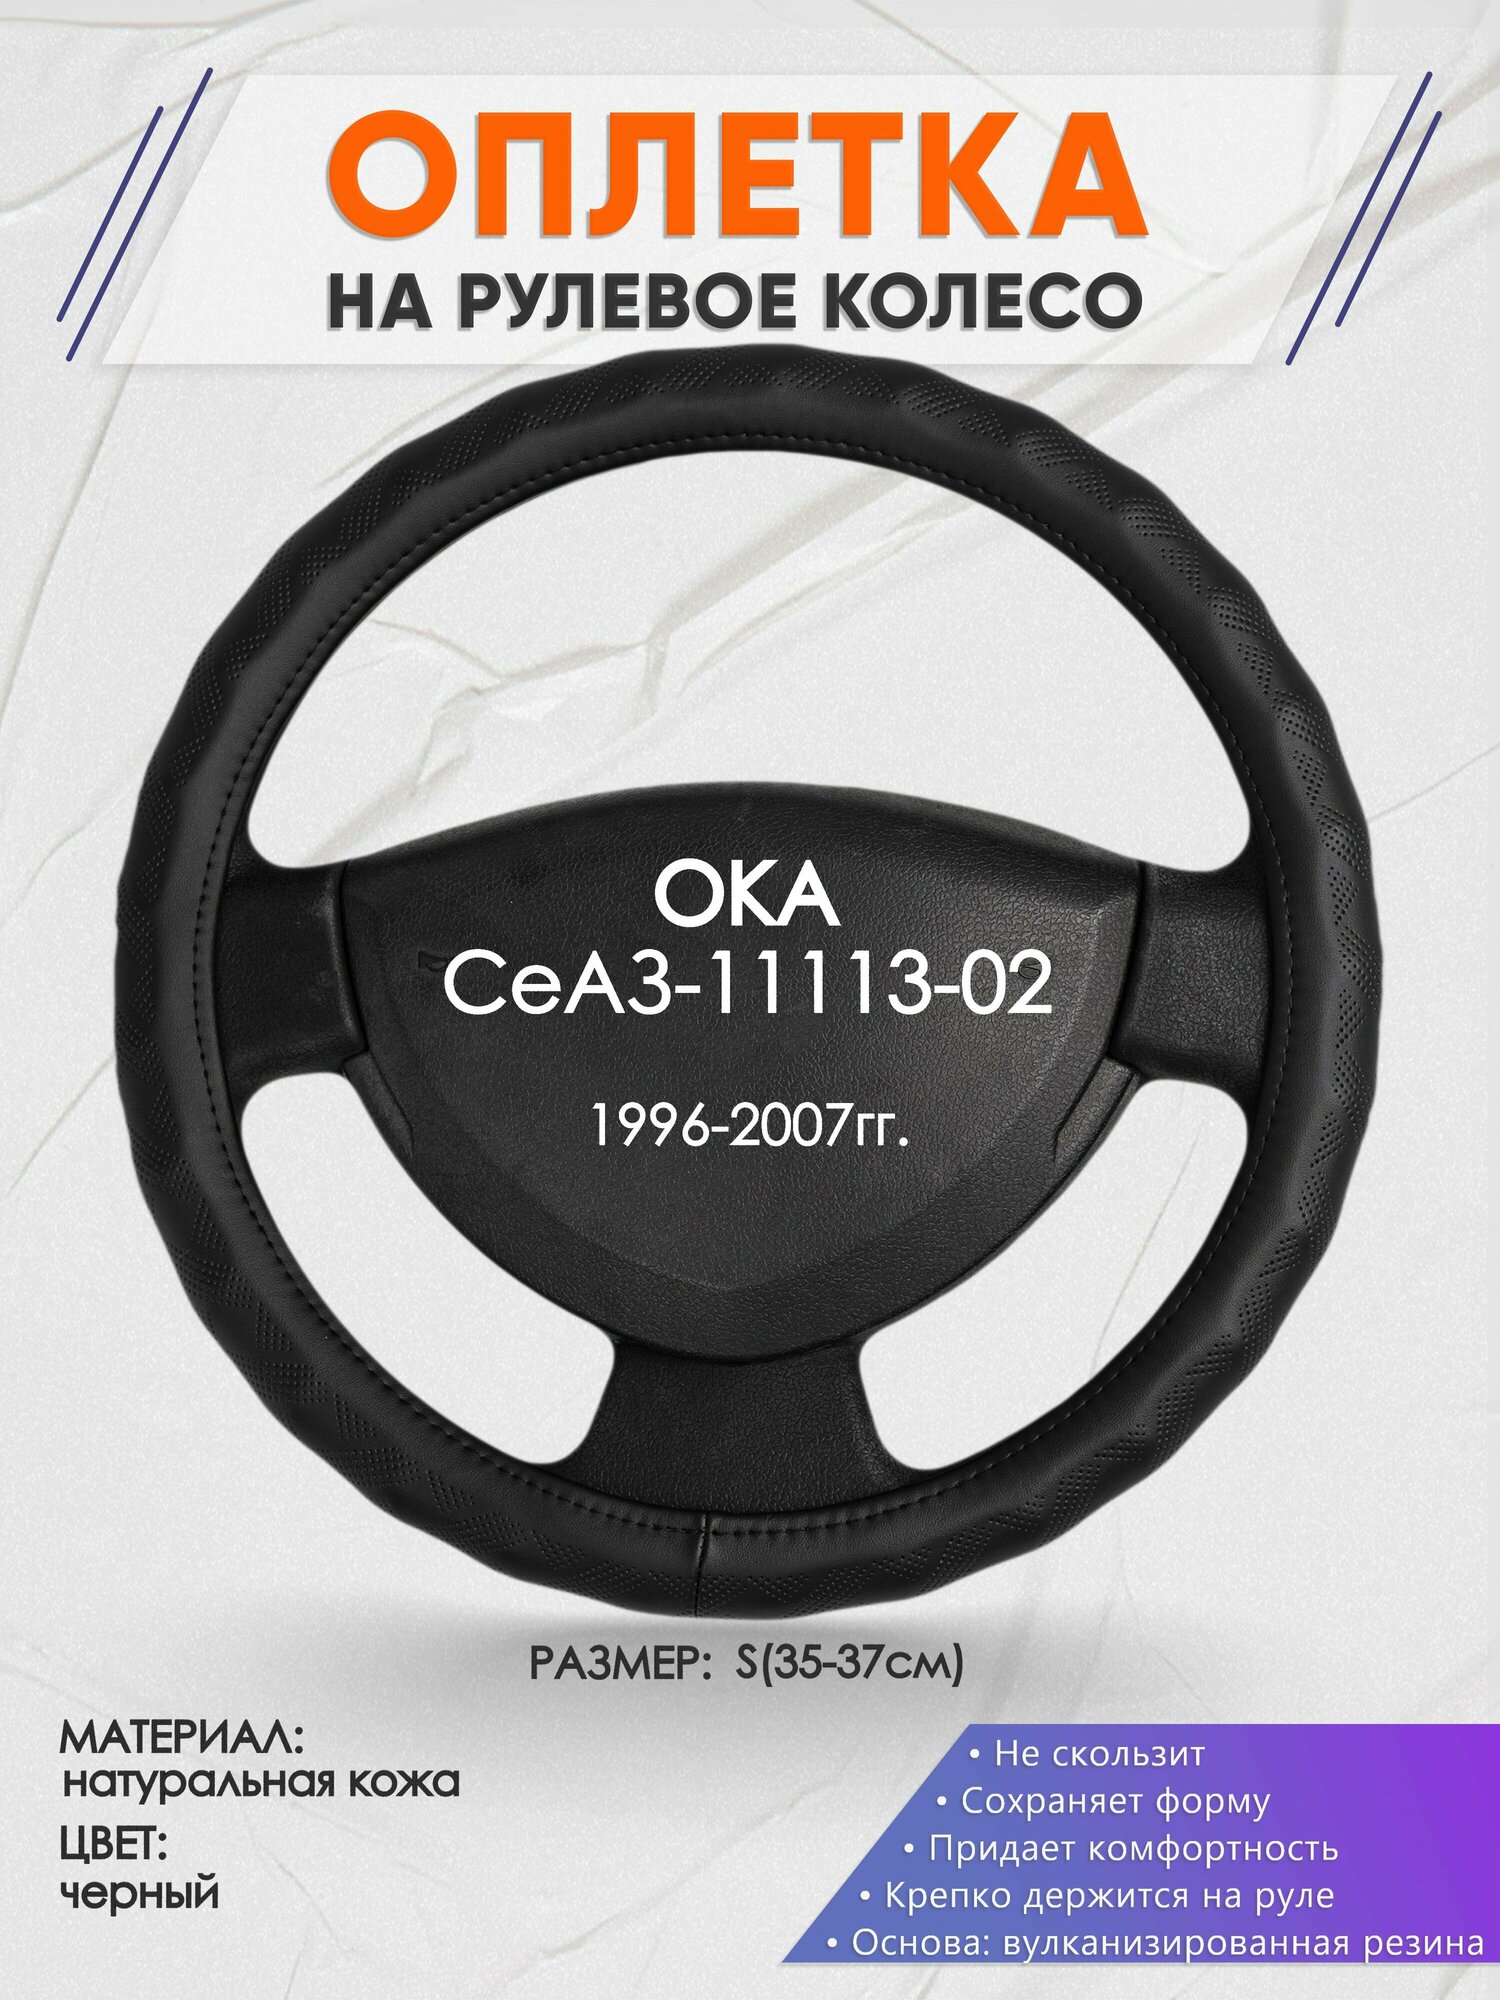 Оплетка на руль для ОКА СеАЗ-11113-02(ОКА ) 1996-2007, S(35-37см), Натуральная кожа 26